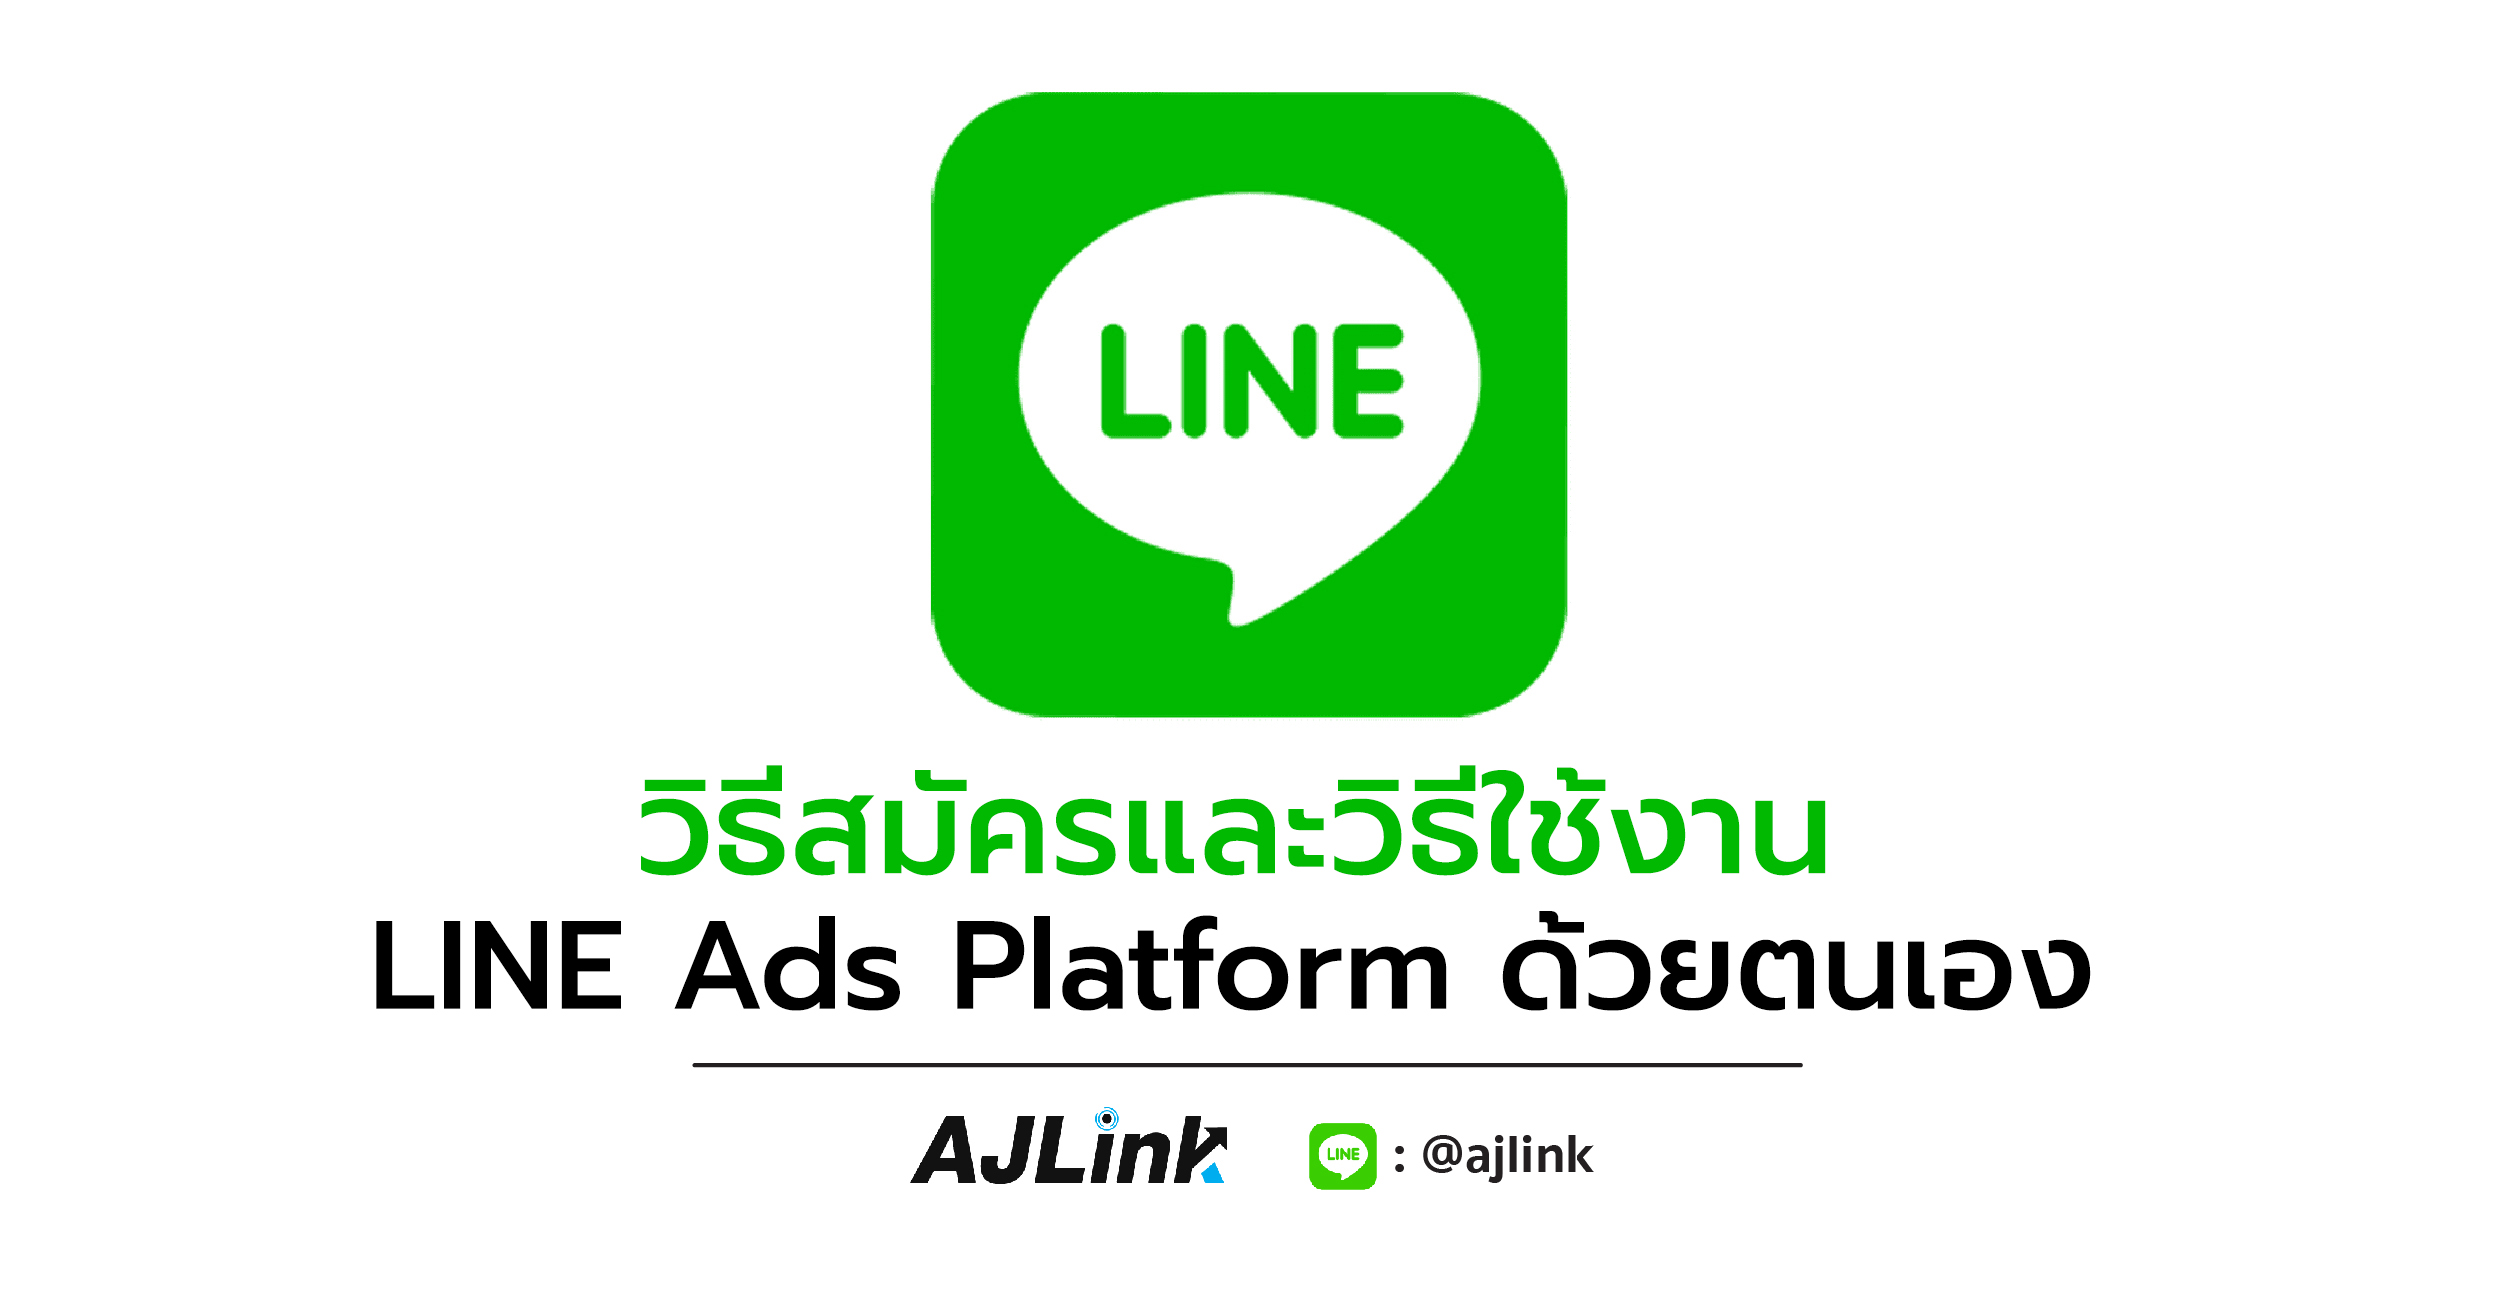 วิธีสมัครและวิธีใช้งาน LINE Ads Platform ด้วยตนเอง